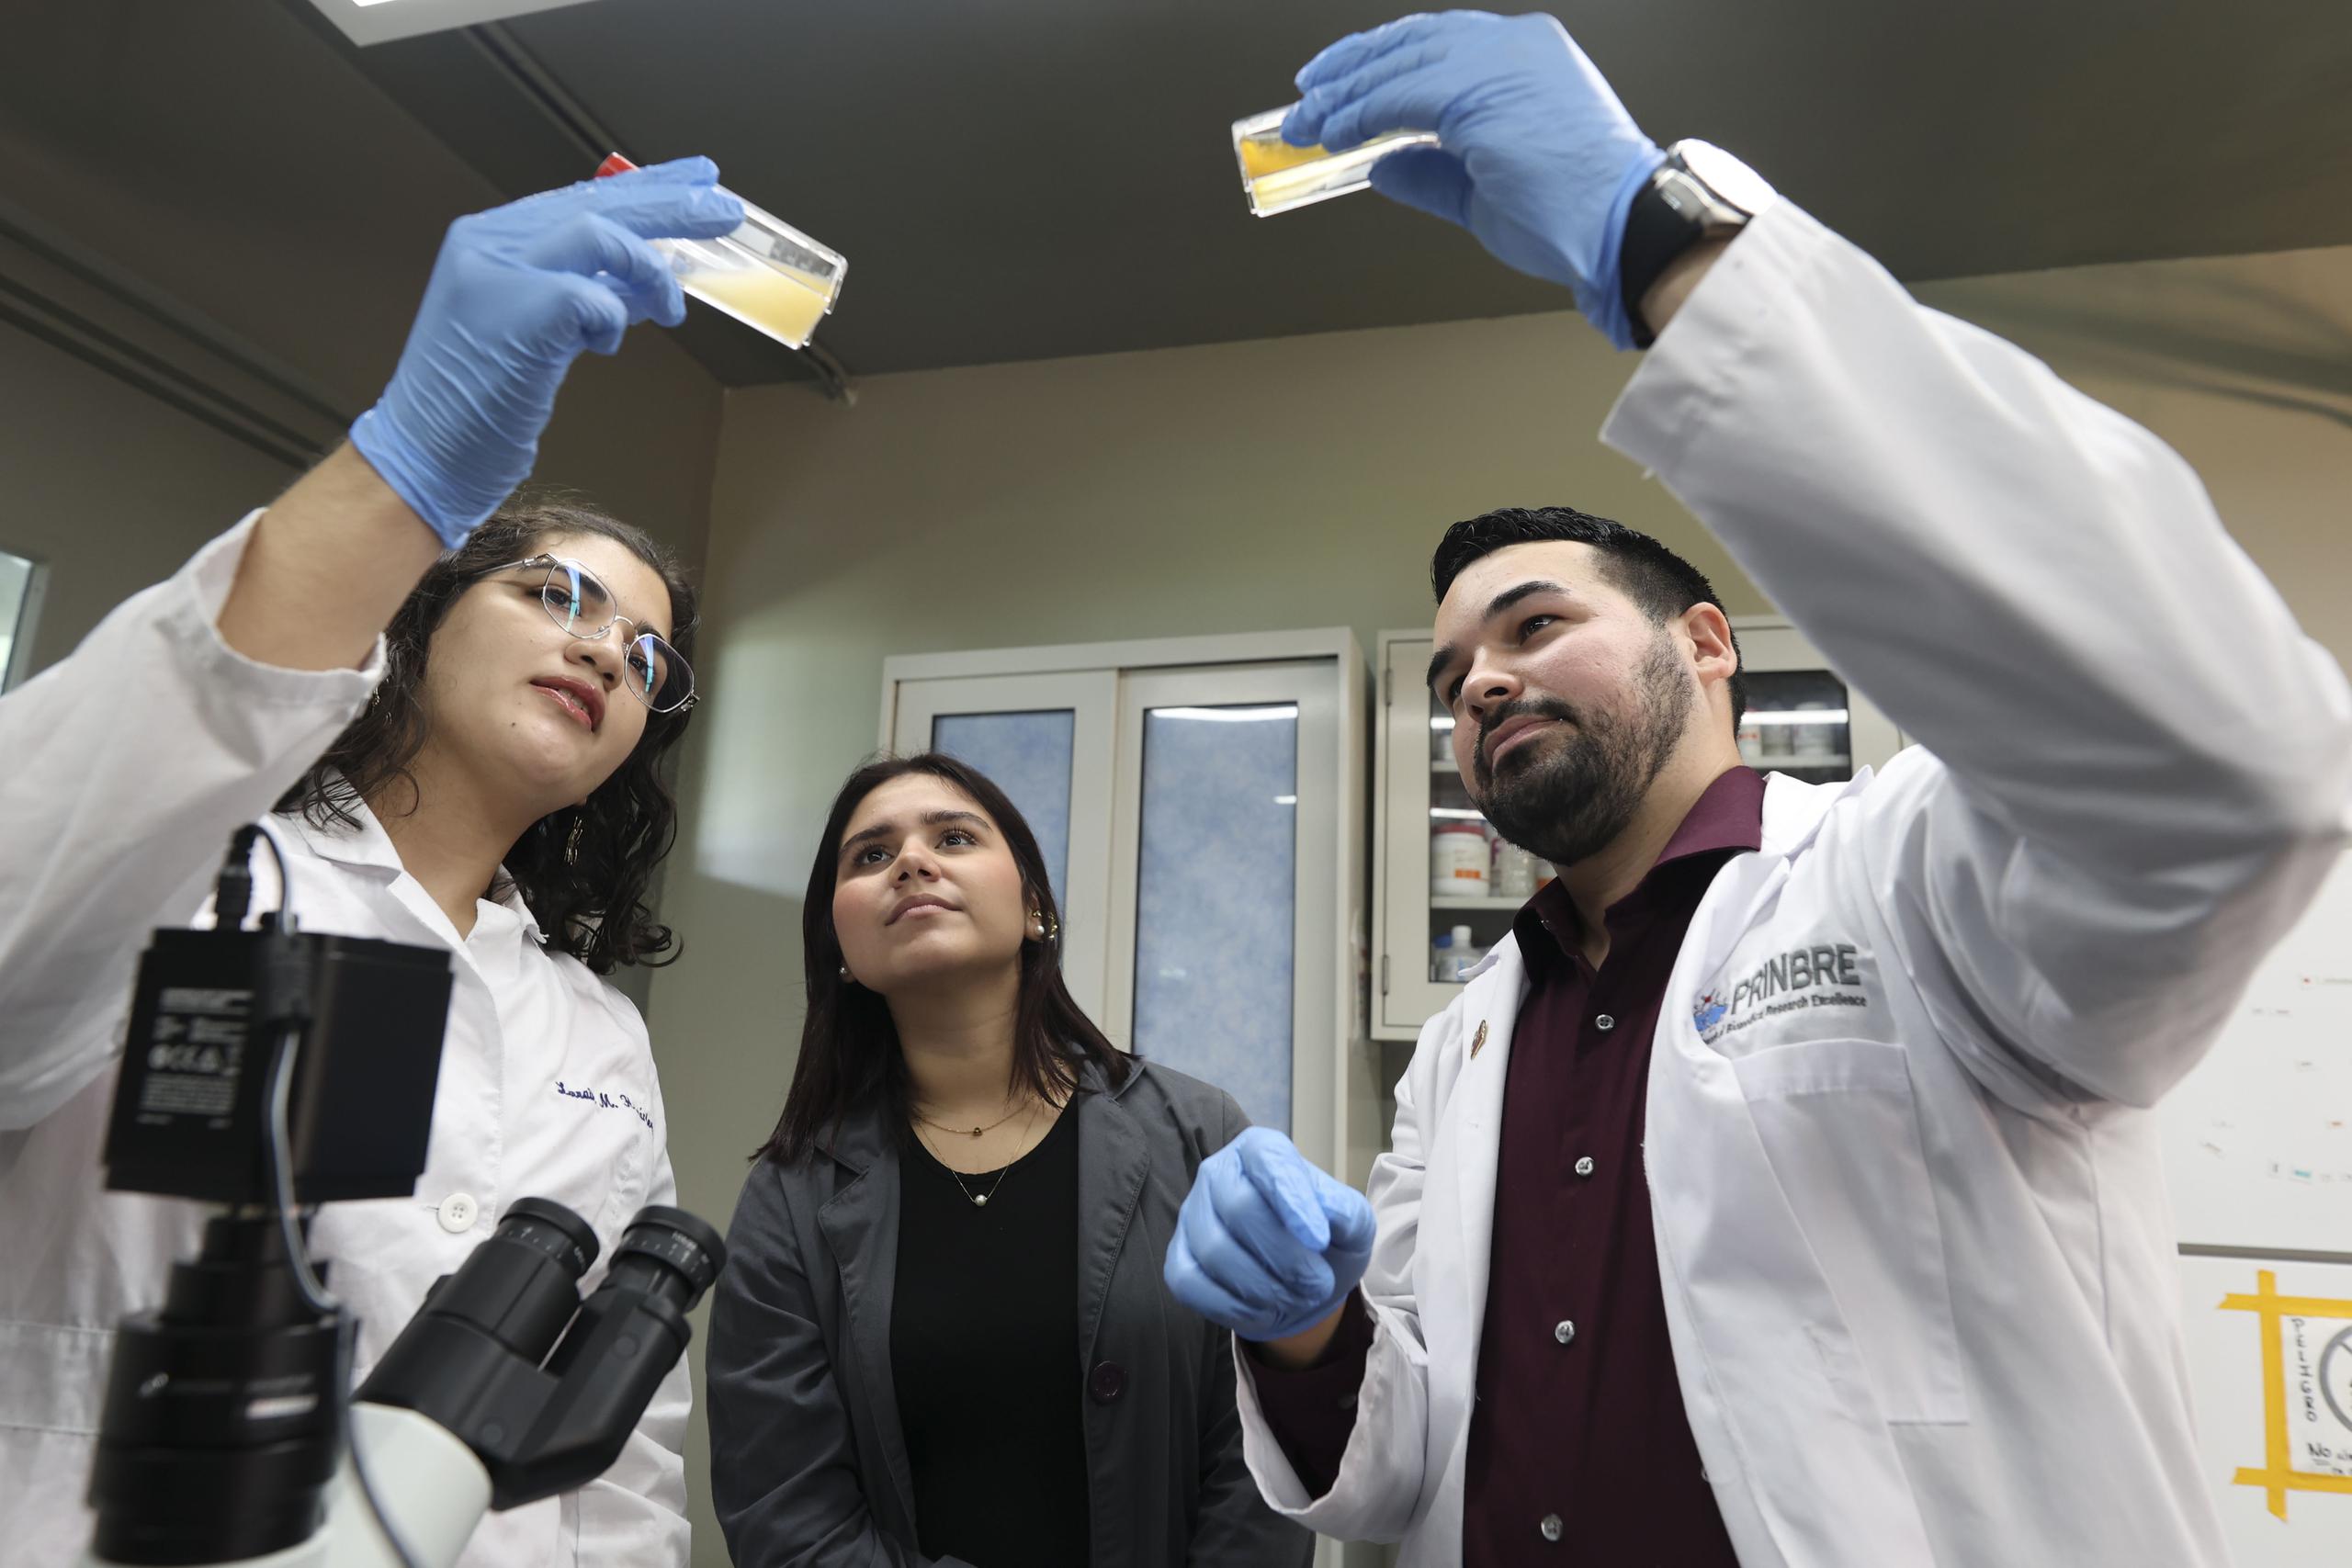 Desde la izquierda, las estudiantes Lorraine Hernández Delgado y Gabriela Paz Alvira, junto al profesor del Departamento de Biología, Kevin Alicea Torres. El grupo trabaja una investigación sobre inmunoterapias para combatir el cáncer.